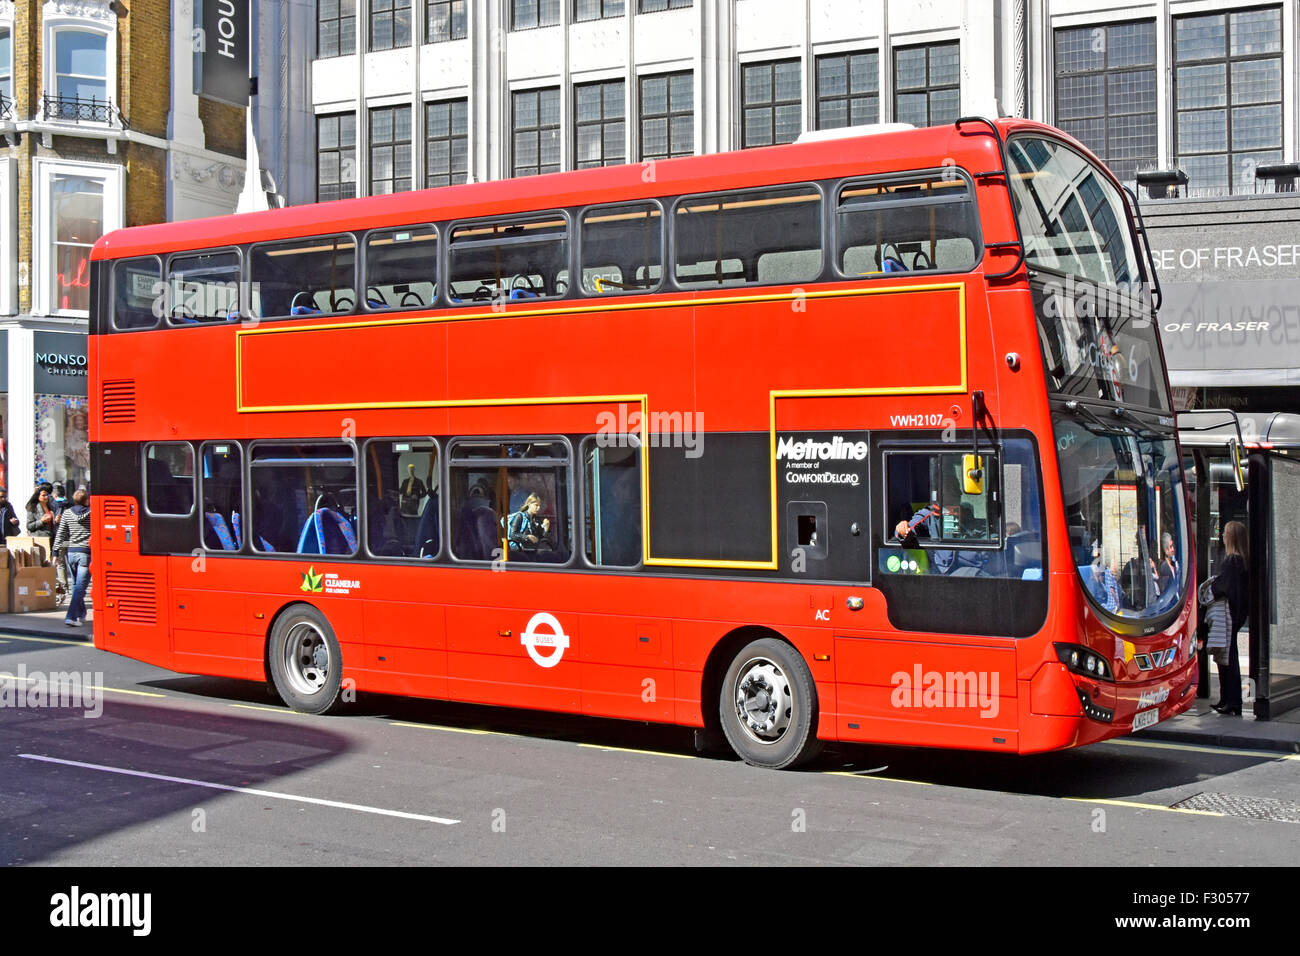 London Bus rot Doppeldecker öffentlicher Nahverkehr Hybrid Cleaner Air Bus Metroline Betreiber keine externe Werbung an der Bushaltestelle Oxford Street England Großbritannien Stockfoto